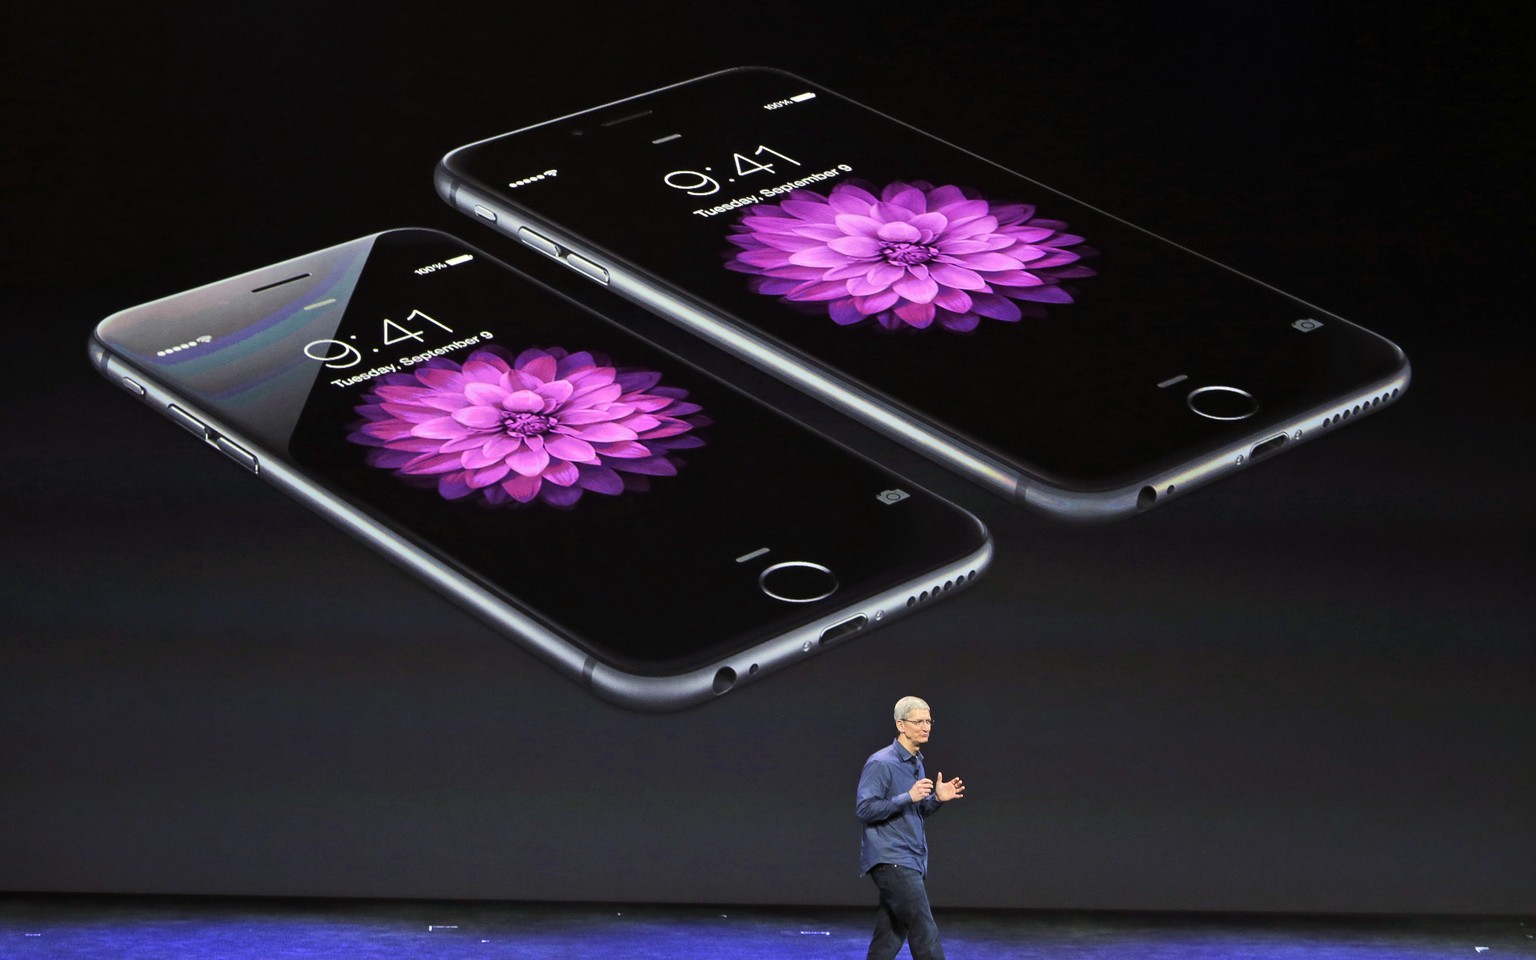 Die wohl auffälligste Änderung: Die jüngste iPhone-Generation ist deutlich gewachsen. Das iPhone 6 (links) ist 4,7 Zoll gross, das iPhone 6 Plus ...